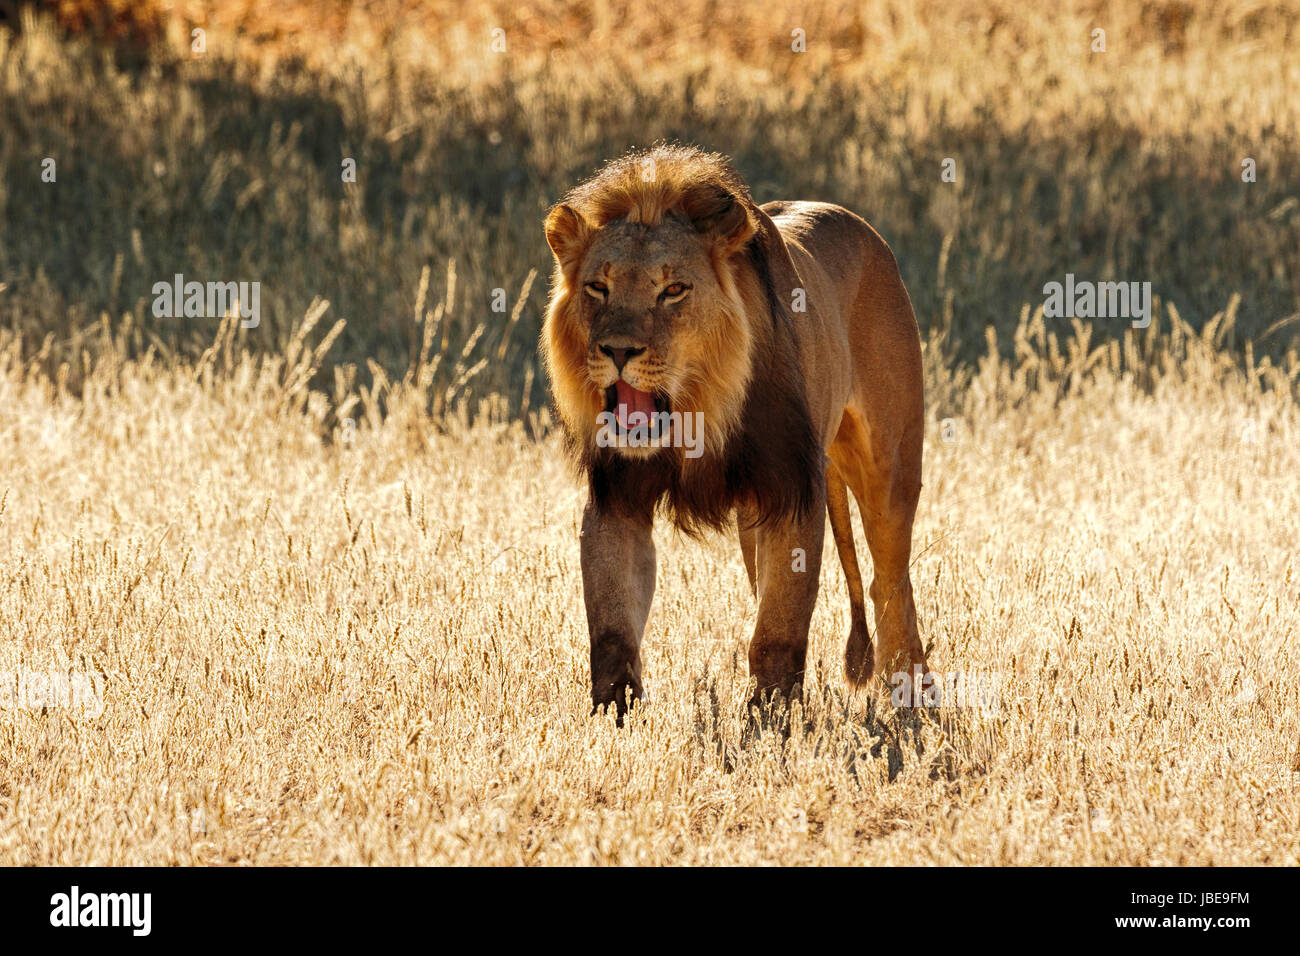 Grand mâle à crinière noire Kalahari lion (Panthera leo) marcher tôt le matin, lumière dorée Banque D'Images